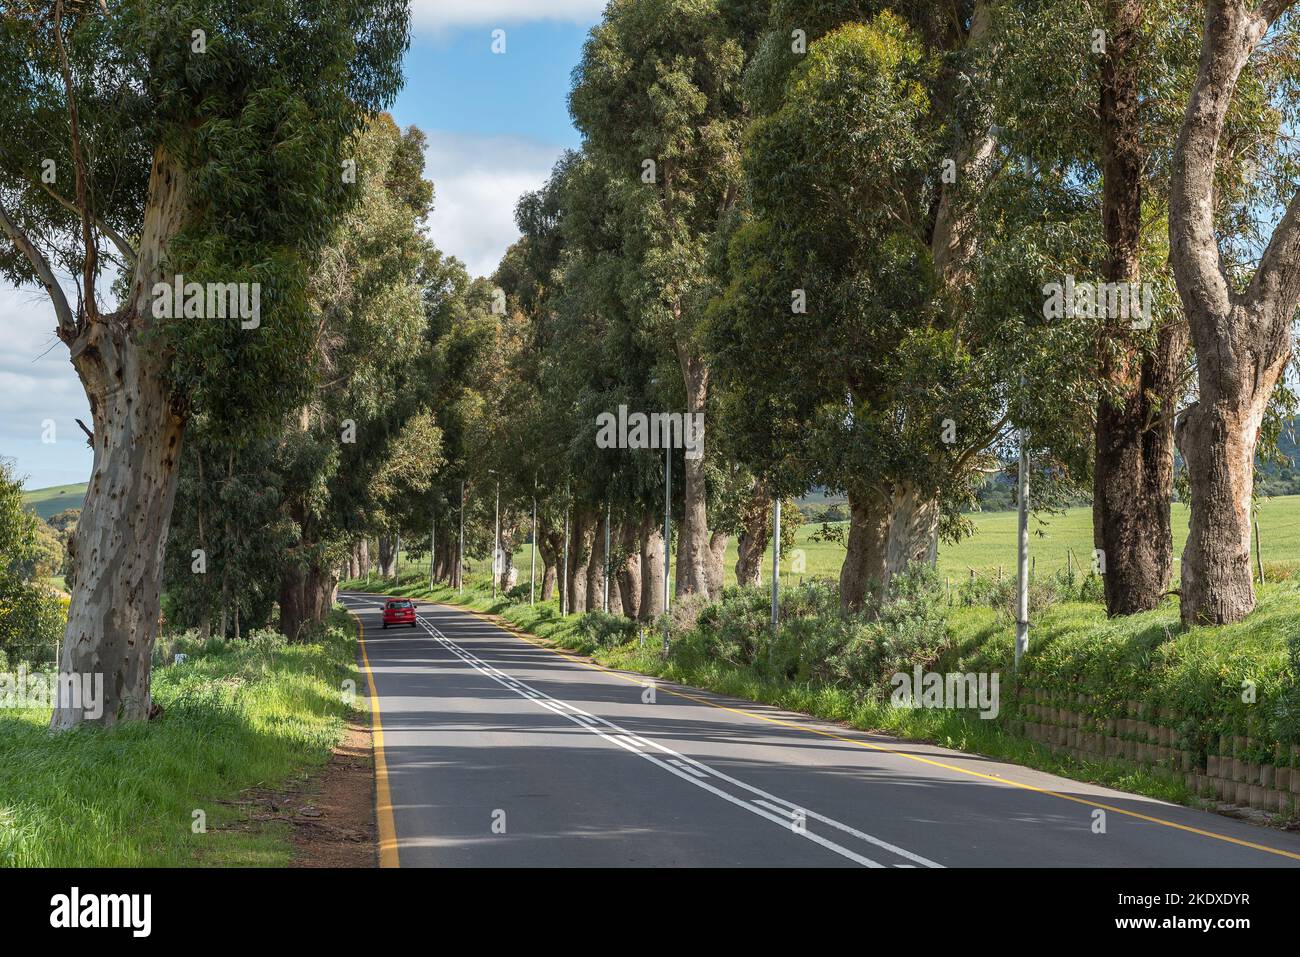 Carretera de carreras bordeada de árboles, carretera M13, en las afueras de Durbanville, en la zona metropolitana de Ciudad del Cabo. Un coche es visible Foto de stock